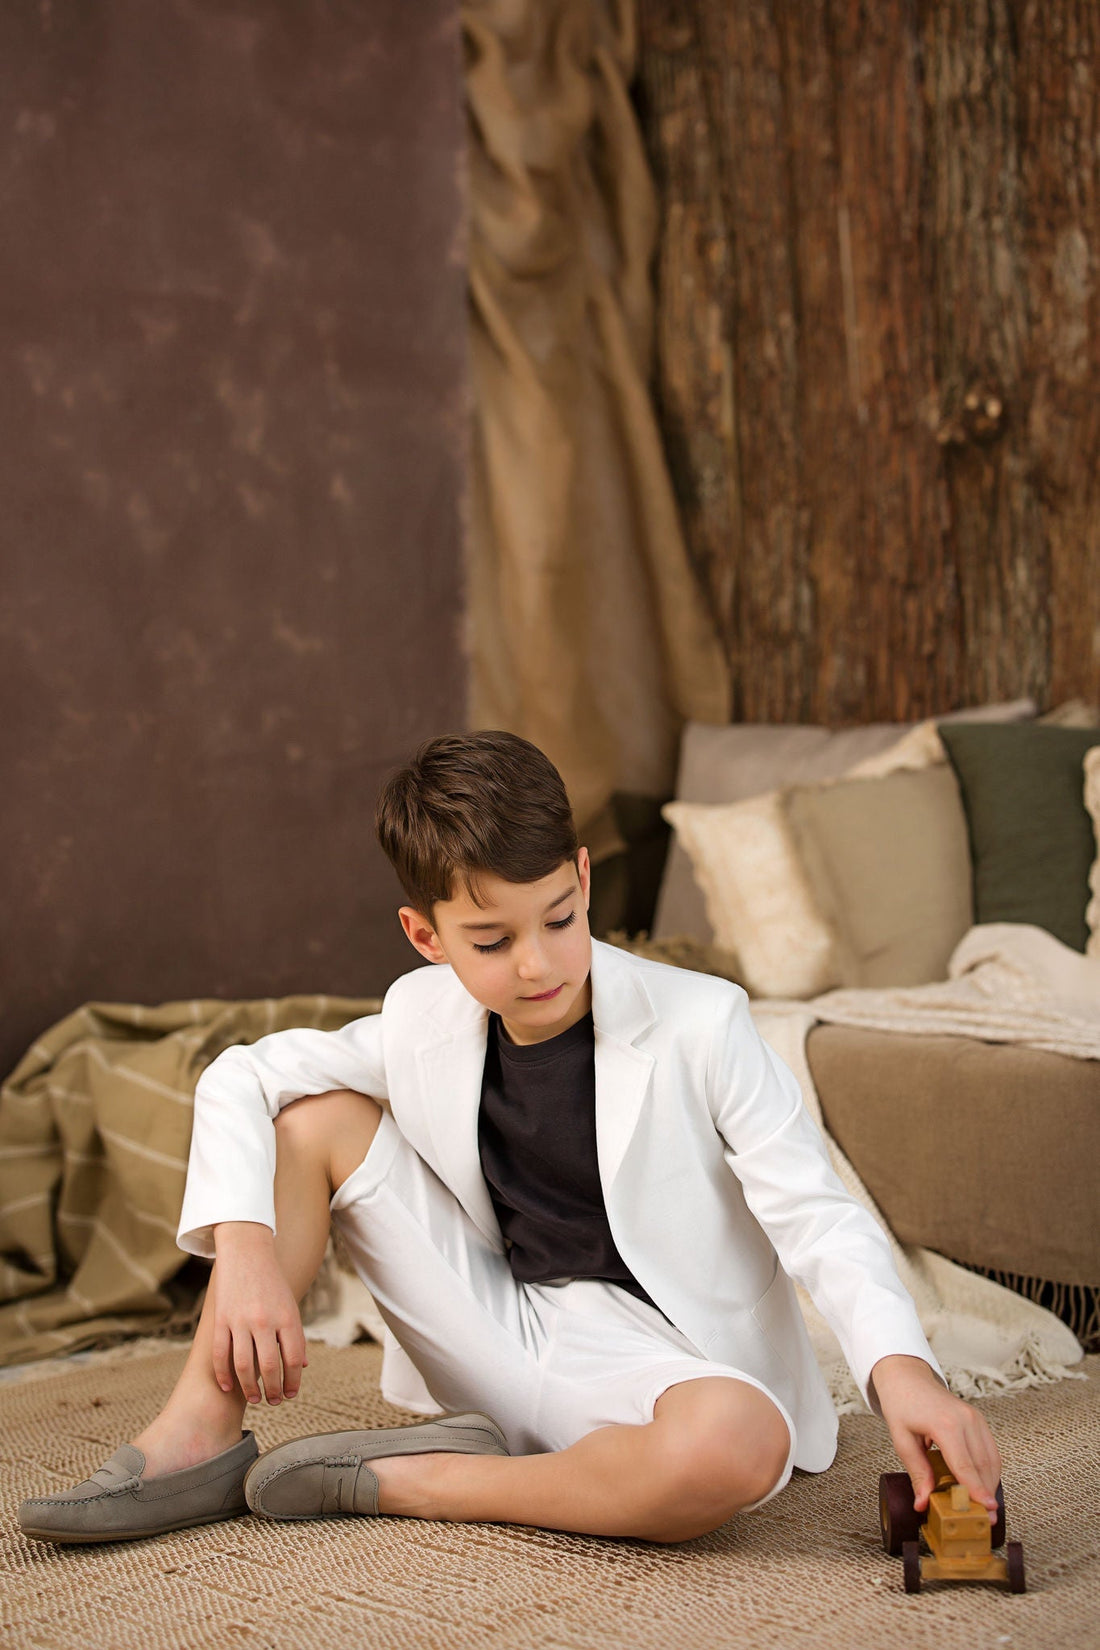 White Linen Suit